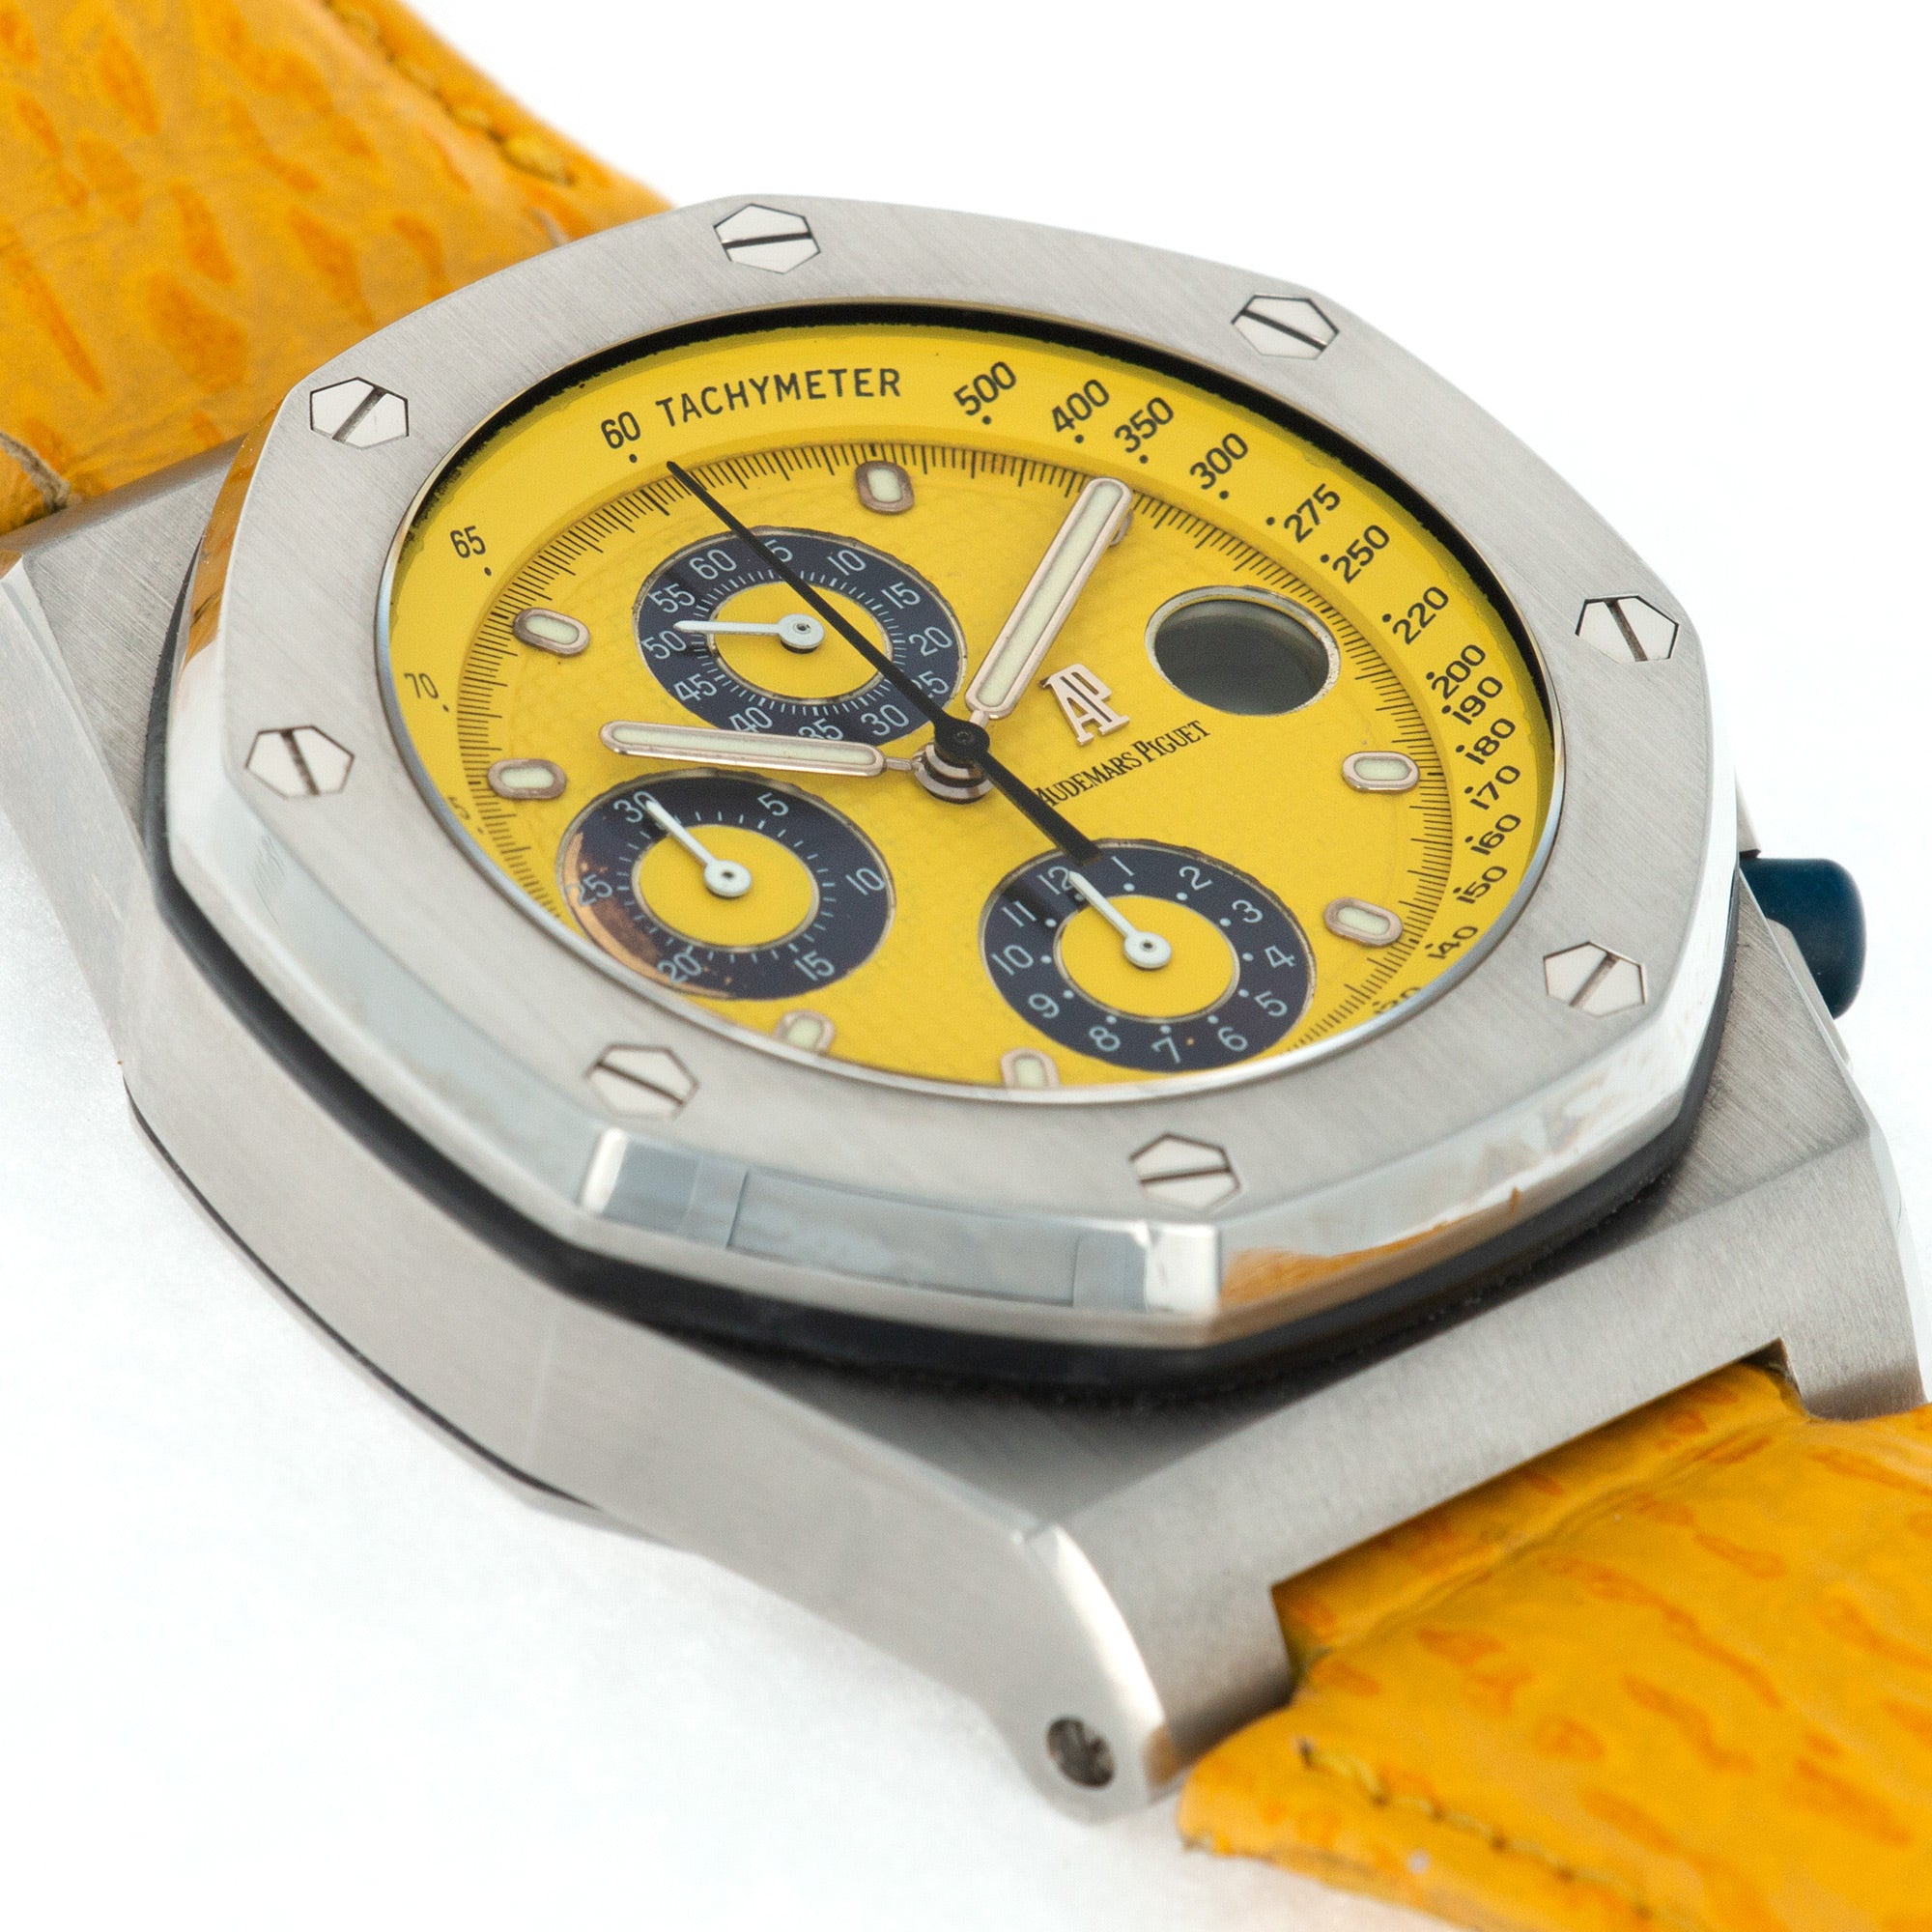 Audemars Piguet - Audemars Piguet Royal Oak Offshore Chronograph Yellow Watch - The Keystone Watches